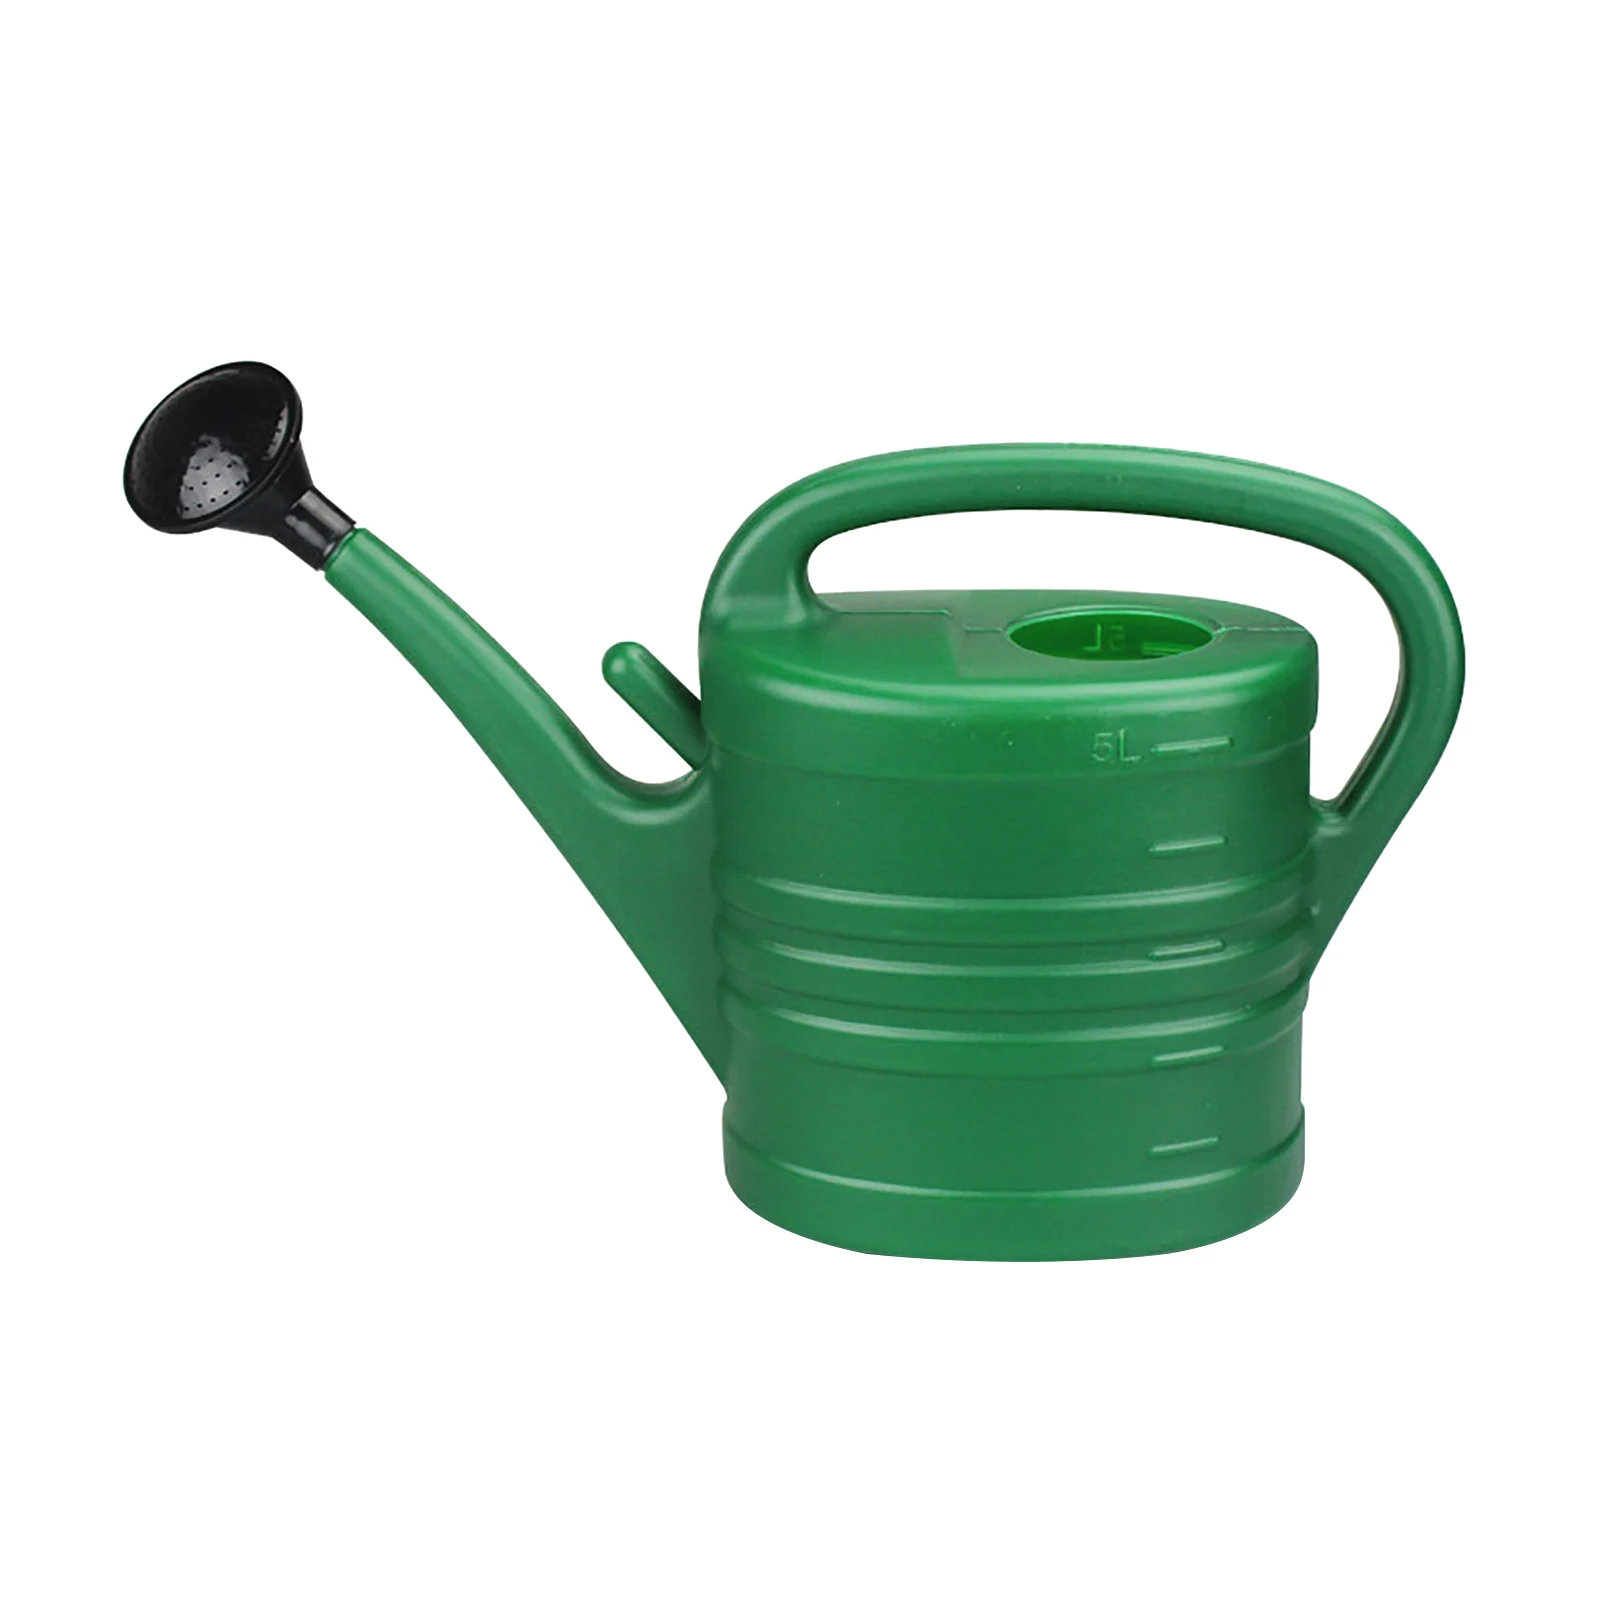 

Ороситель садовый большой емкости, практичный легкий инструмент для легкой очистки, 5 л, разбрызгиватель для полива растений со съемным нос...